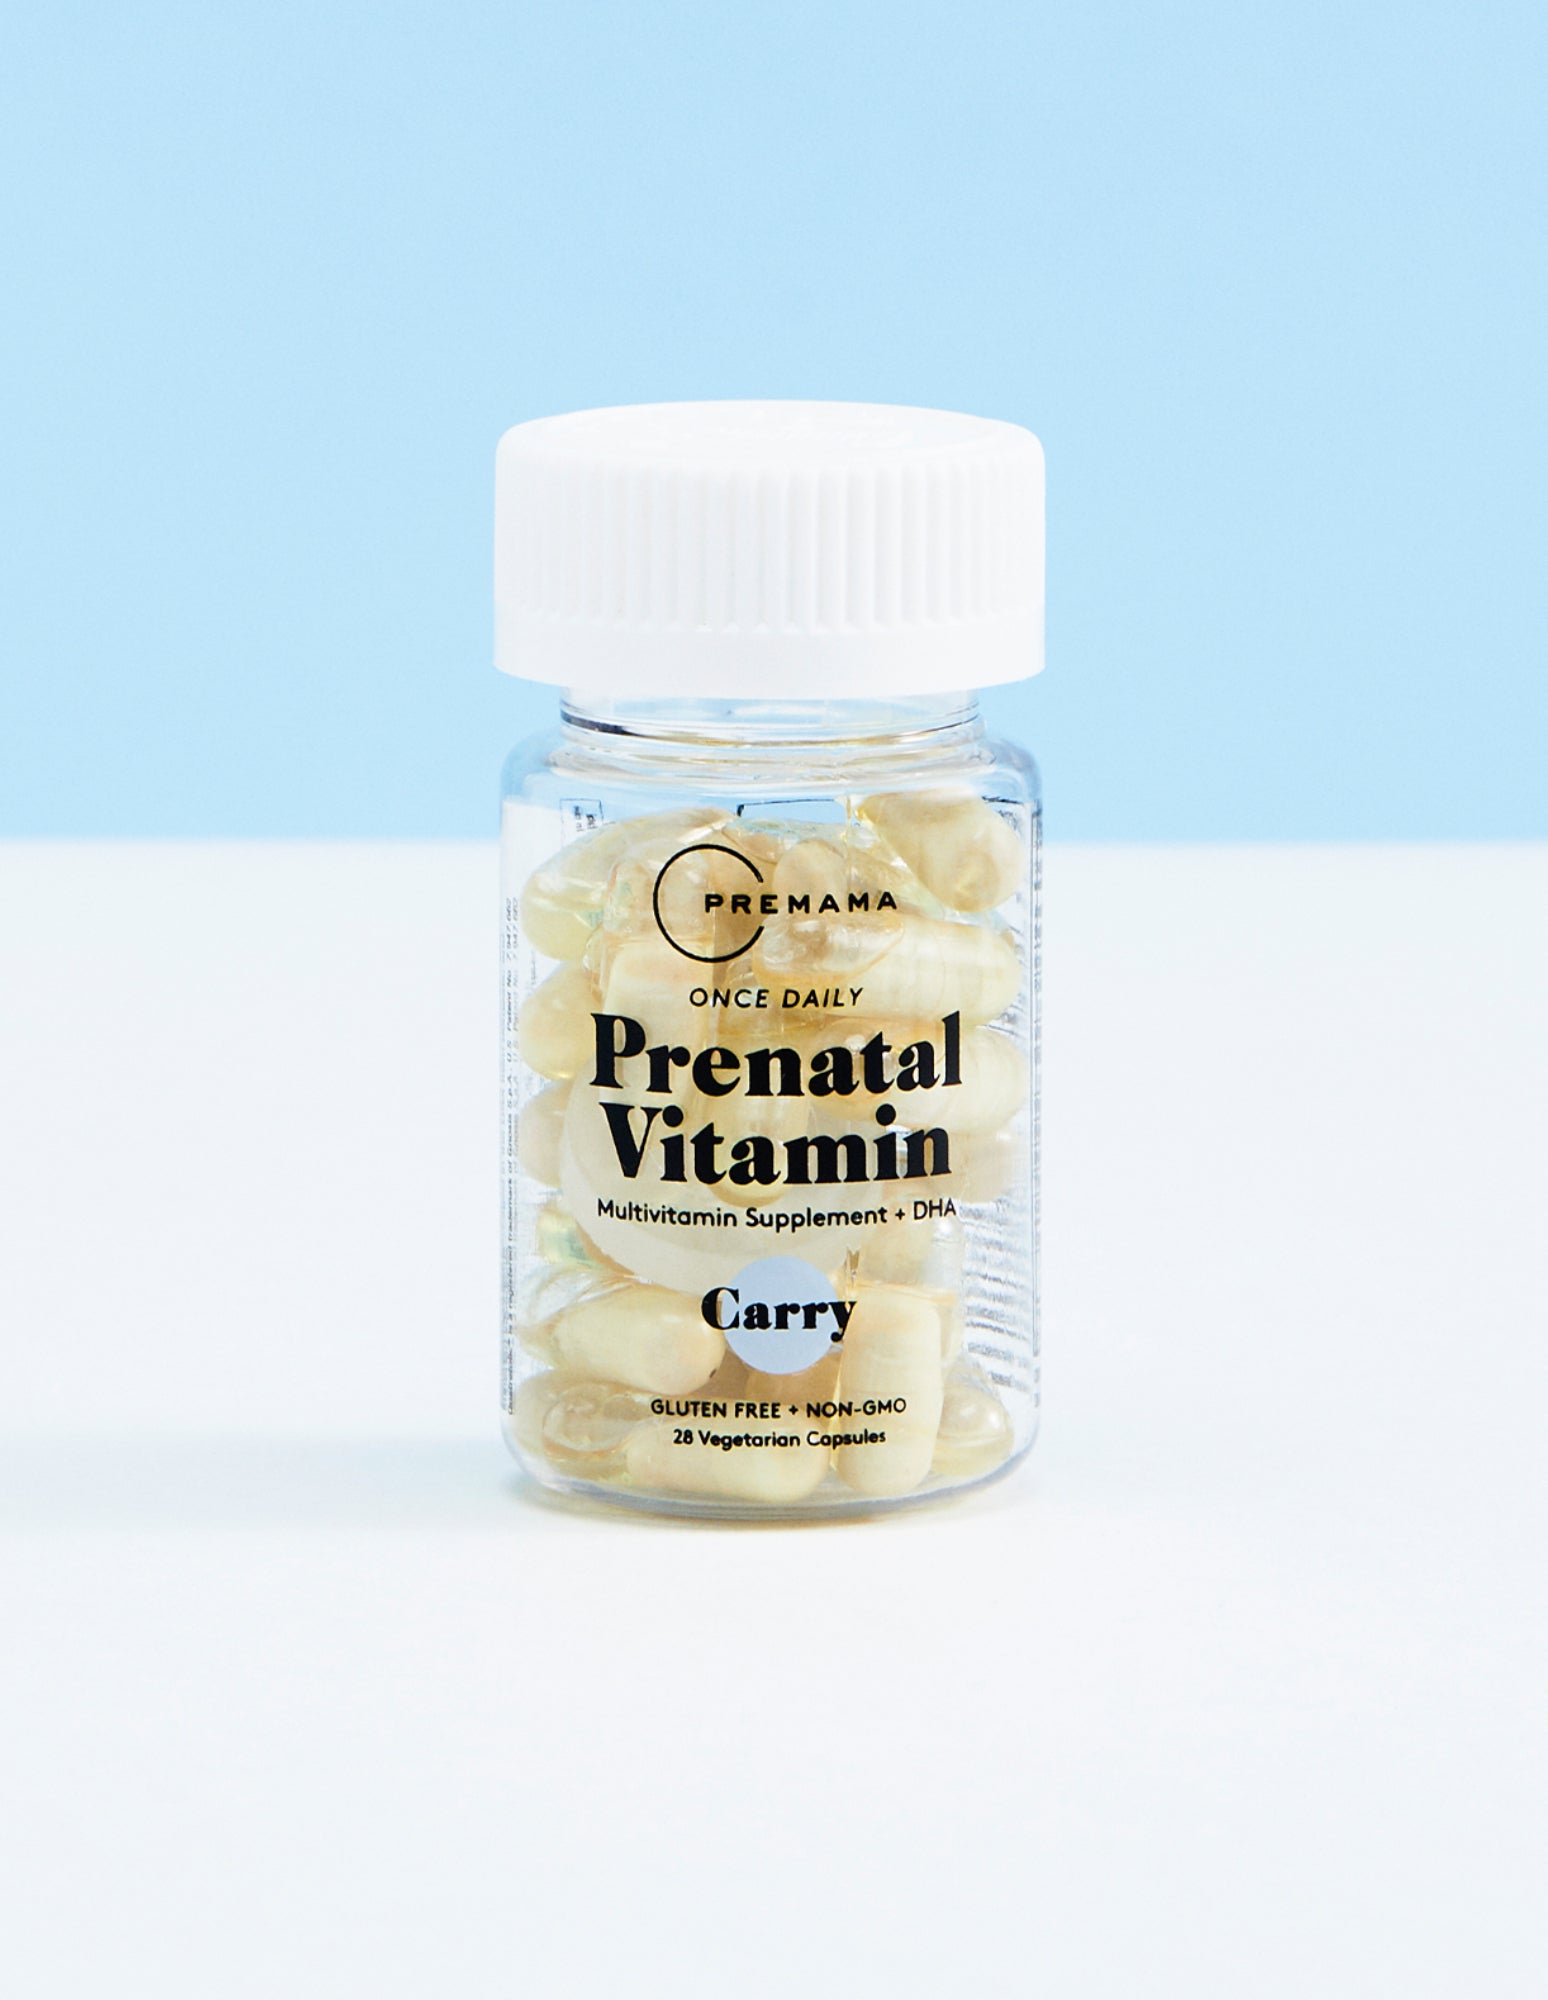 Premama Prenatal Preparation Multivitamin with DHA, Gluten Free and Non-GMO, for the healthy pregnancy process.